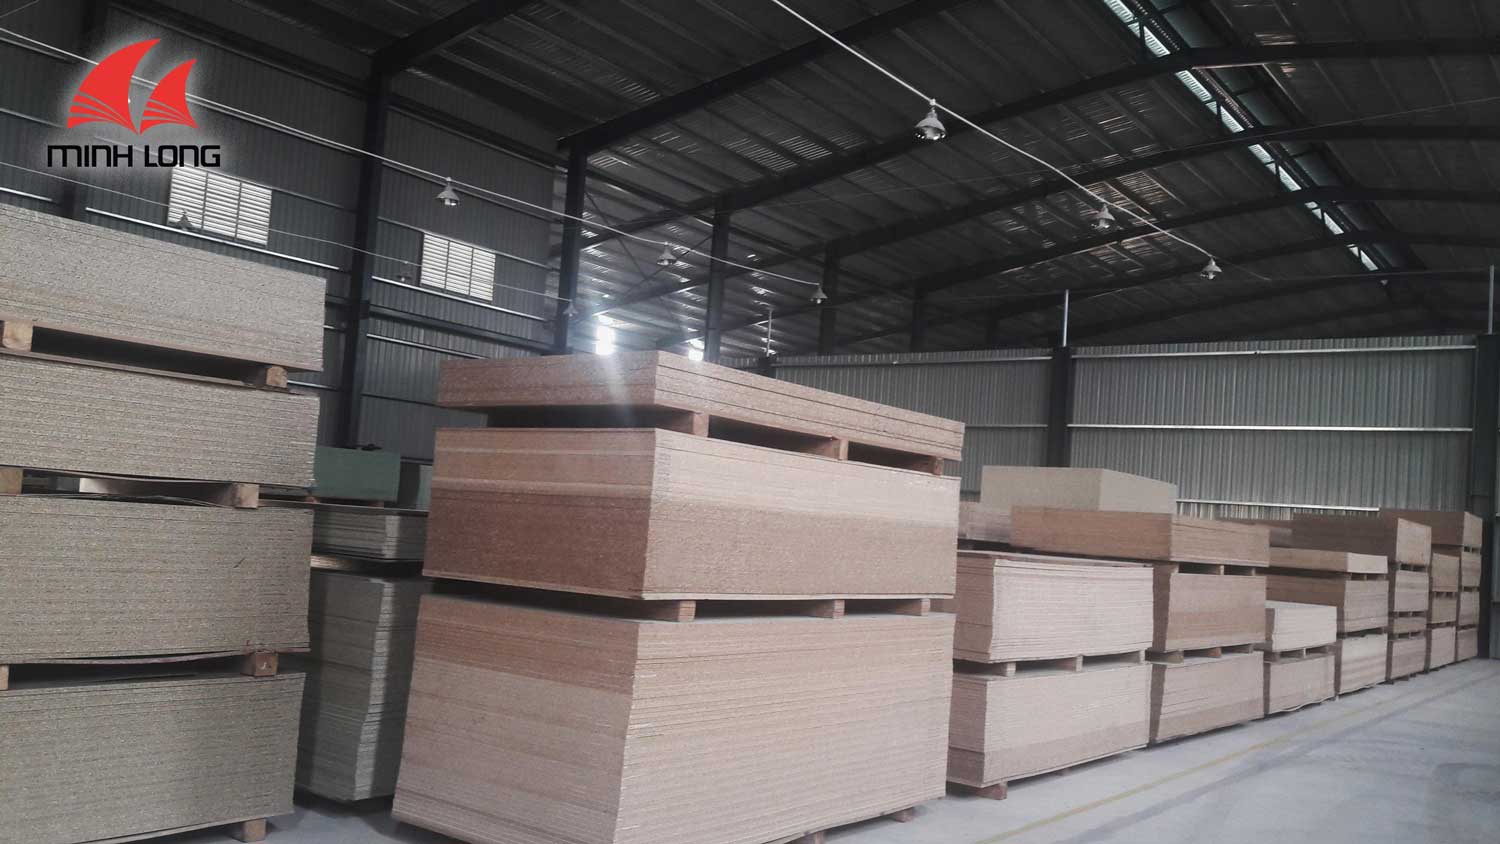 Ván gỗ công nghiệp được điều chuyển về kho đáp ứng nhu cầu của khách hàng tại Hà Nội và các tỉnh lân cận